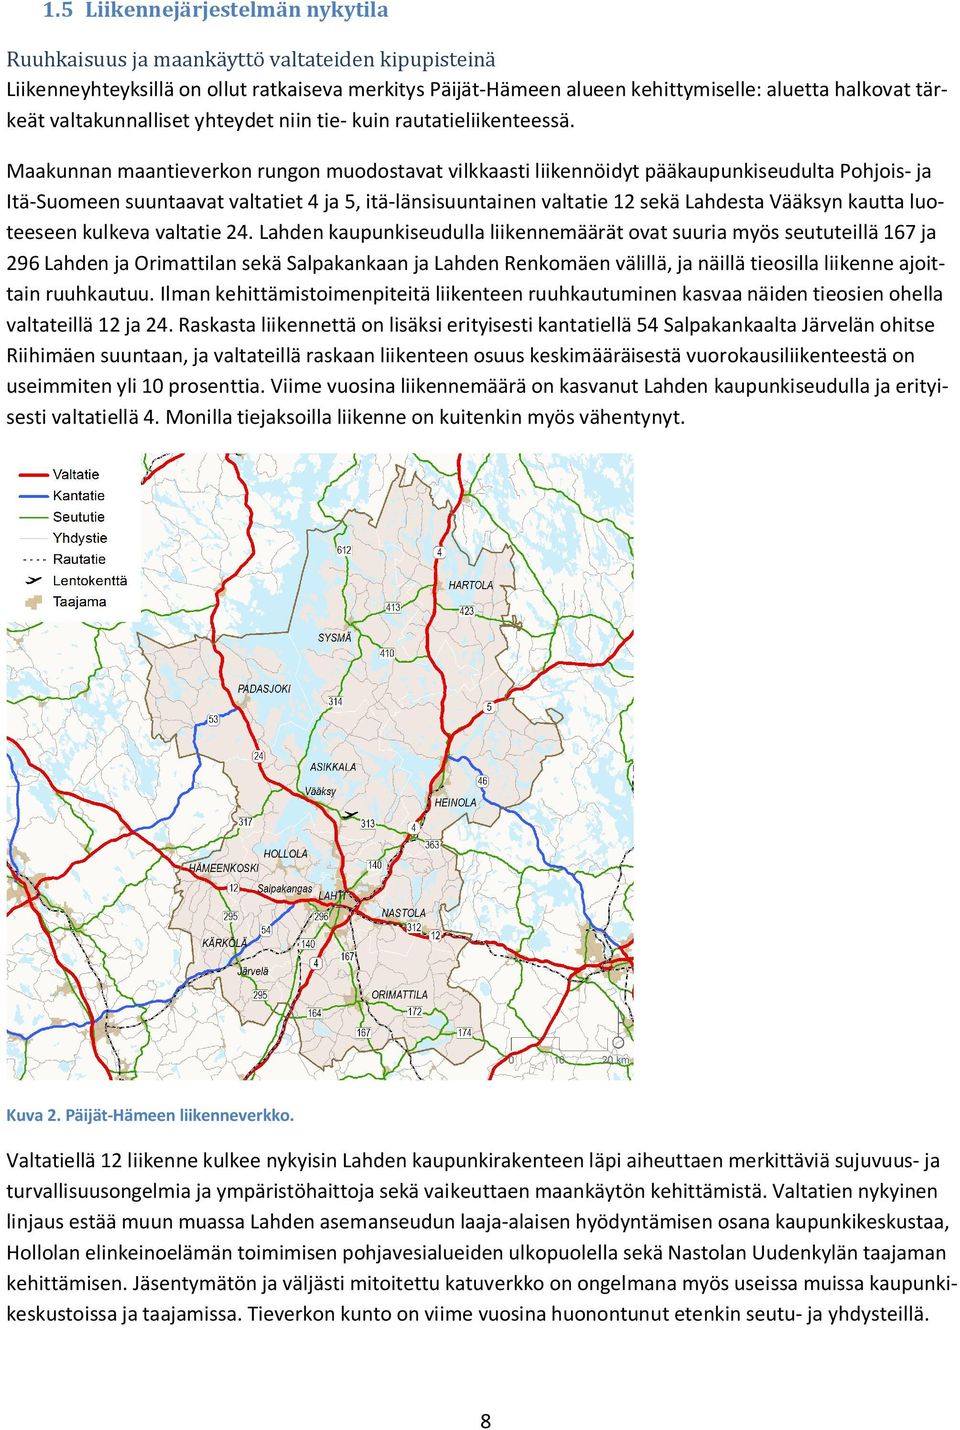 Maakunnan maantieverkon rungon muodostavat vilkkaasti liikennöidyt pääkaupunkiseudulta Pohjois- ja Itä-Suomeen suuntaavat valtatiet 4 ja 5, itä-länsisuuntainen valtatie 2 sekä Lahdesta Vääksyn kautta